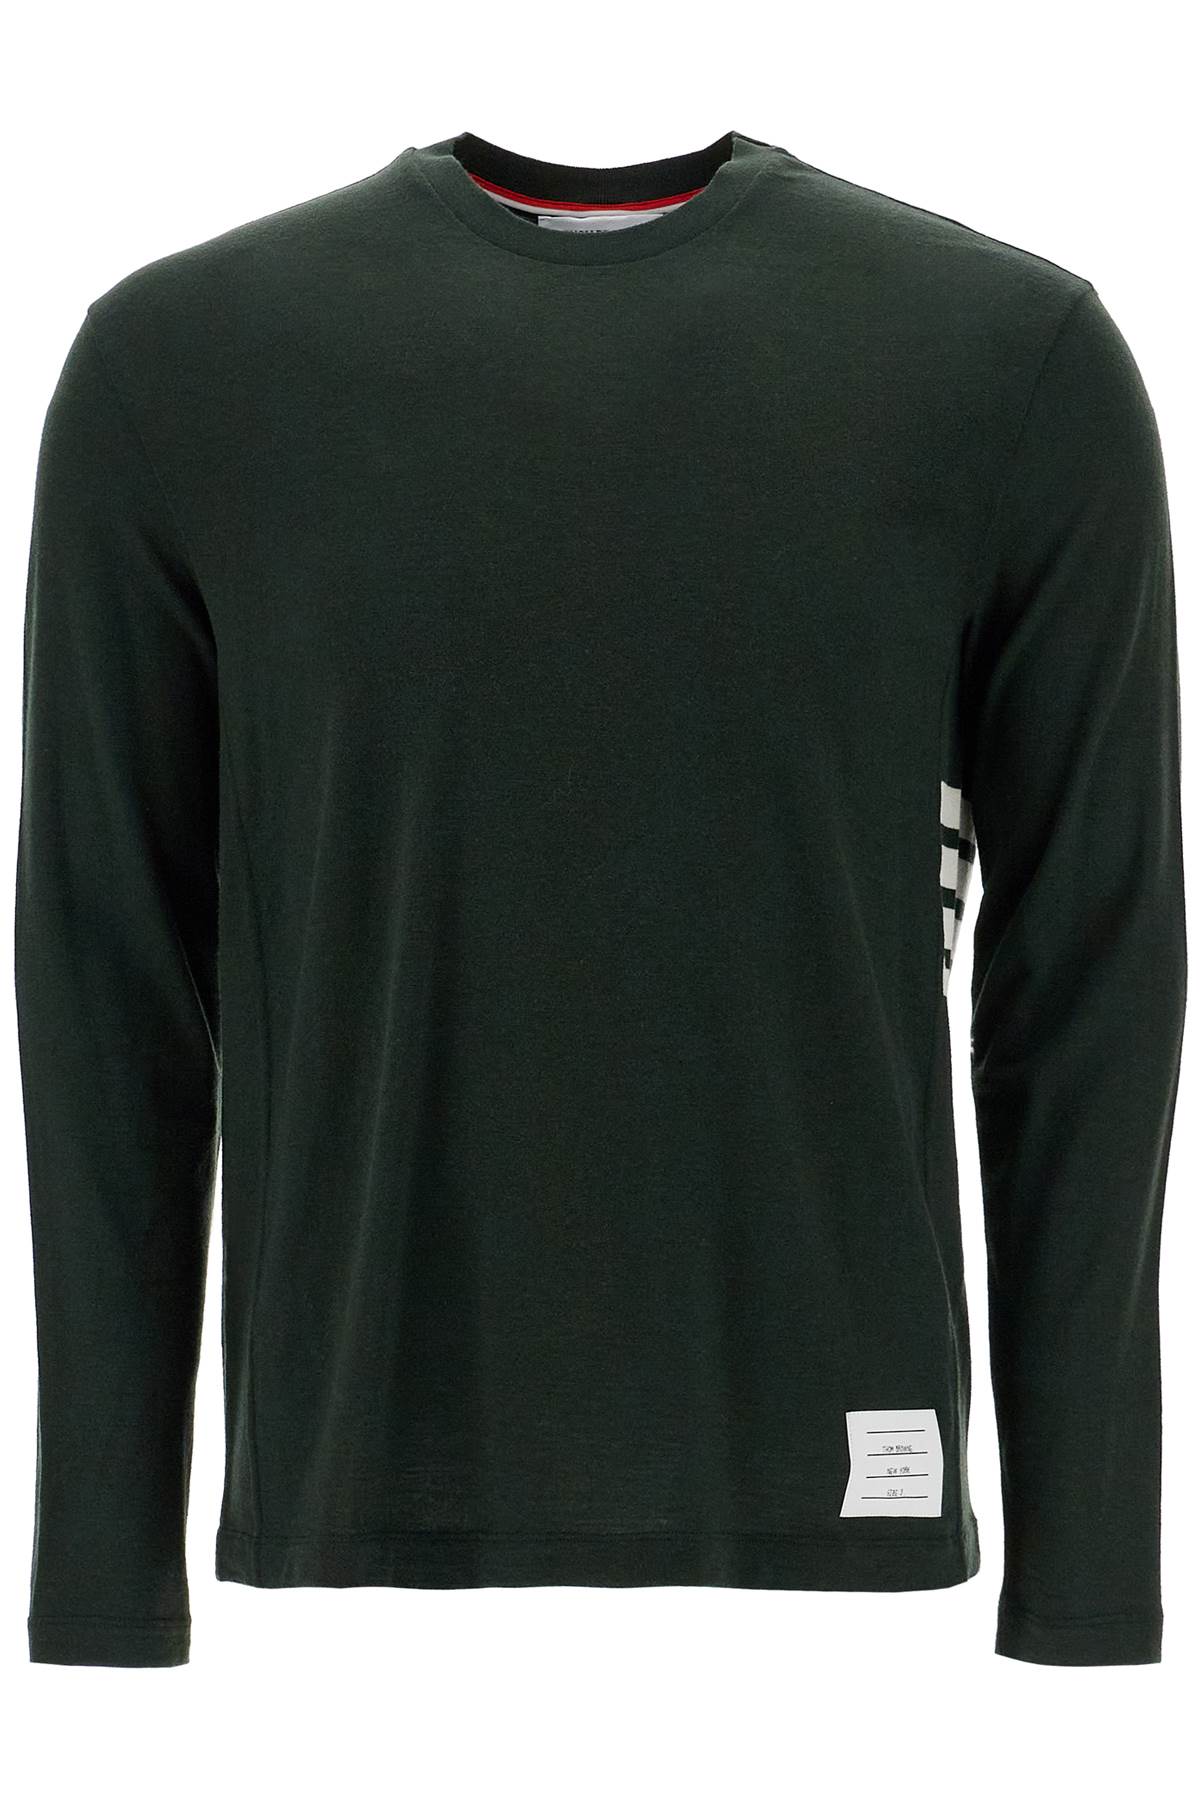 long-sleeved wool jersey t-shirt for men MJS218A J0149 GREEN